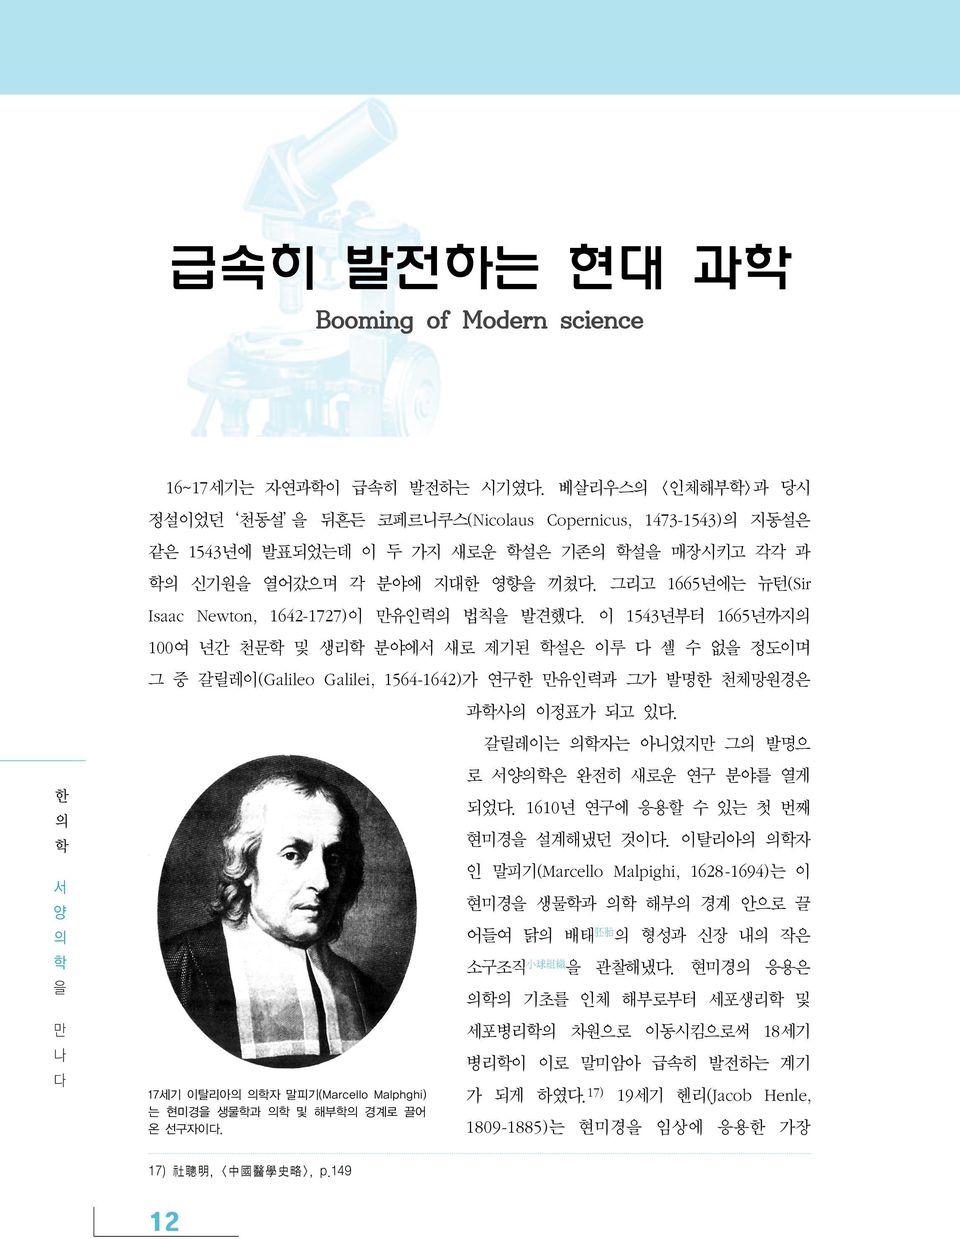 그리고 1665년에는 뉴턴(Sir Isaac Newton, 1642-1727)이 만유인력 법칙을 발견했다.